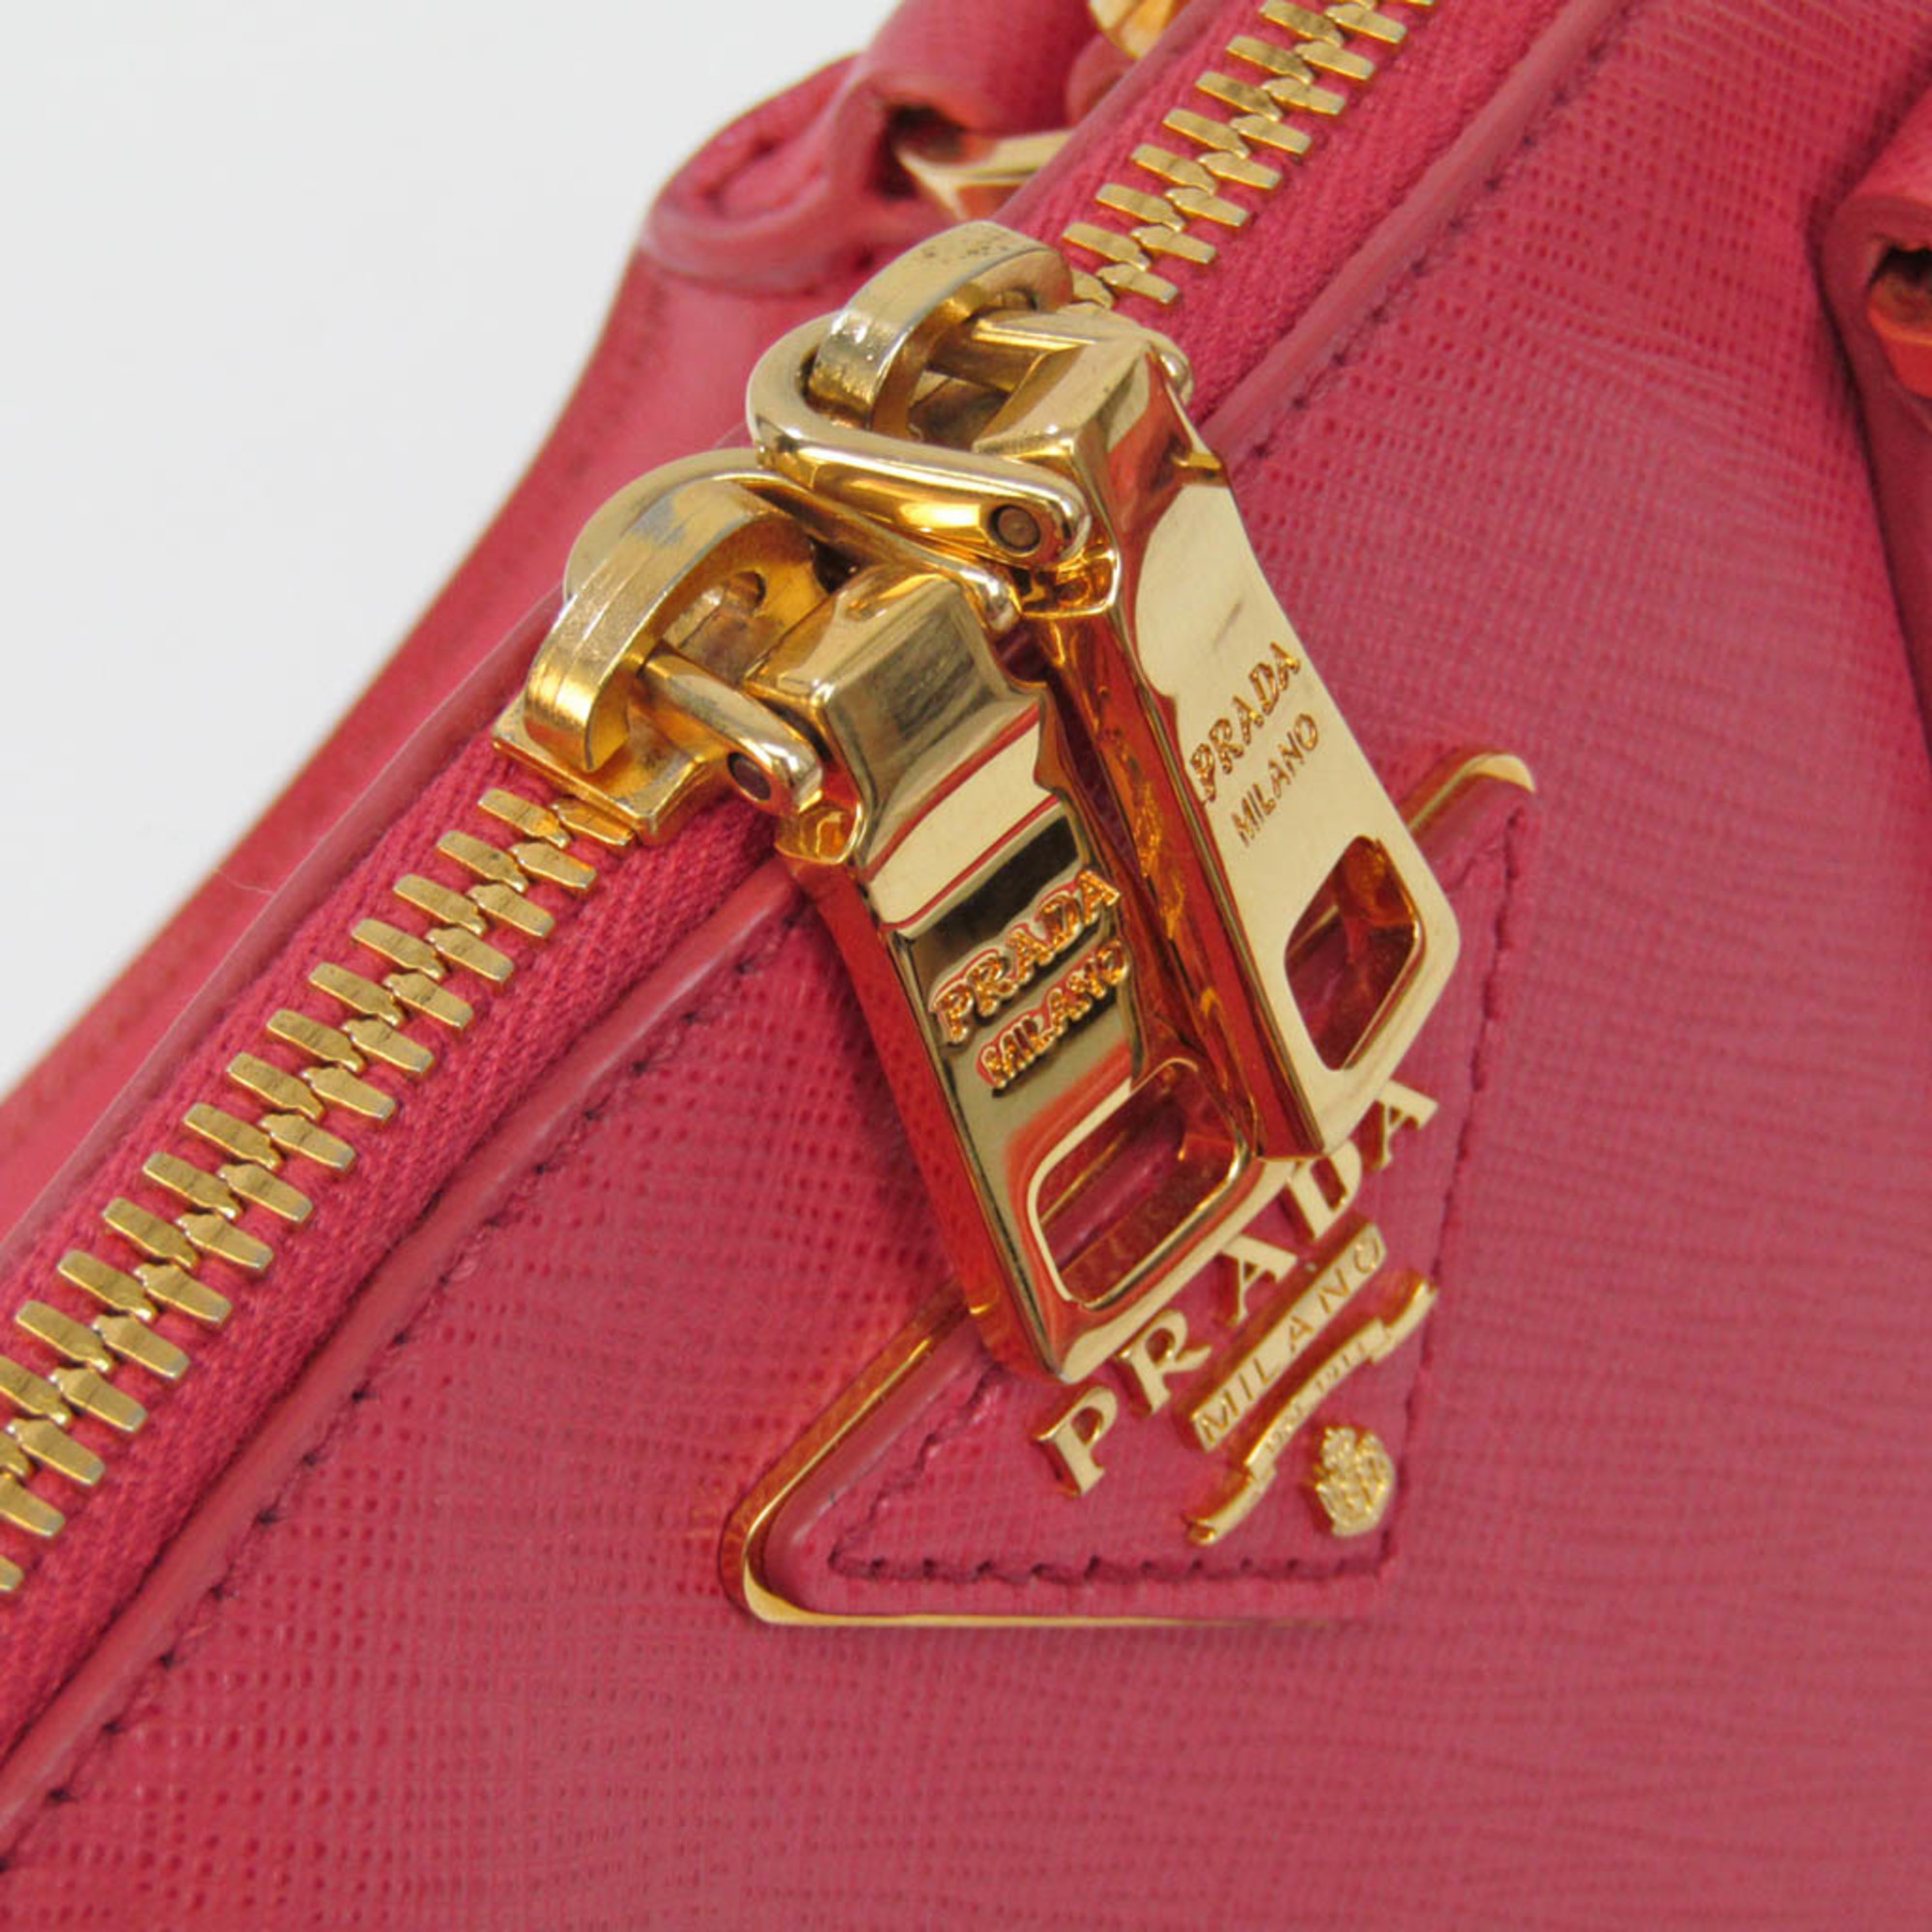 Prada Saffiano BL0837 Women's Saffiano Handbag,Shoulder Bag Pink